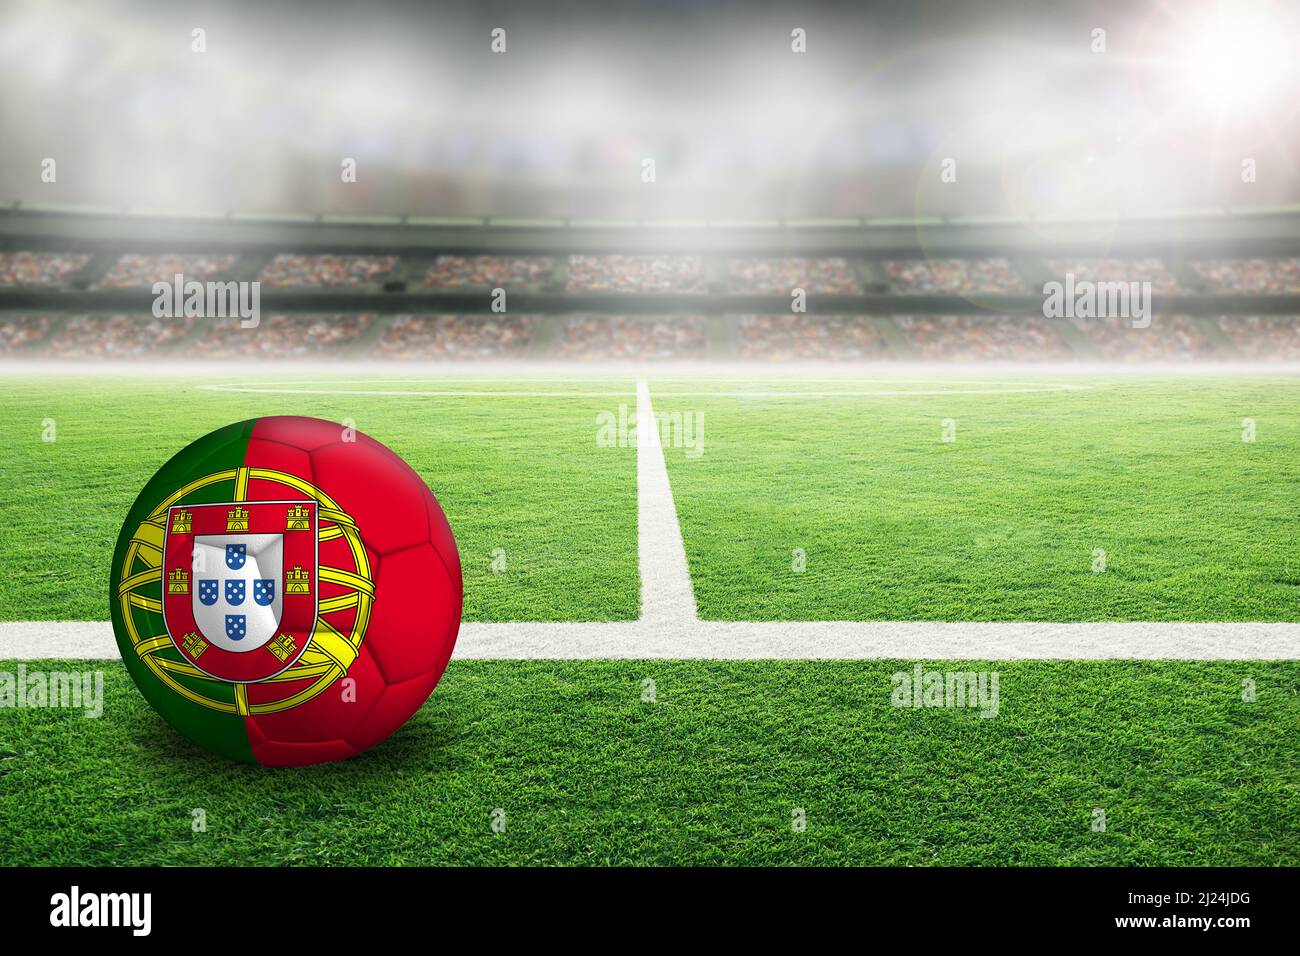 Fußball im hell erleuchteten Stadion mit der Flagge Portugals. Konzentrieren Sie sich auf den Vordergrund und den Fußball mit geringer Schärfentiefe im Hintergrund Stockfoto